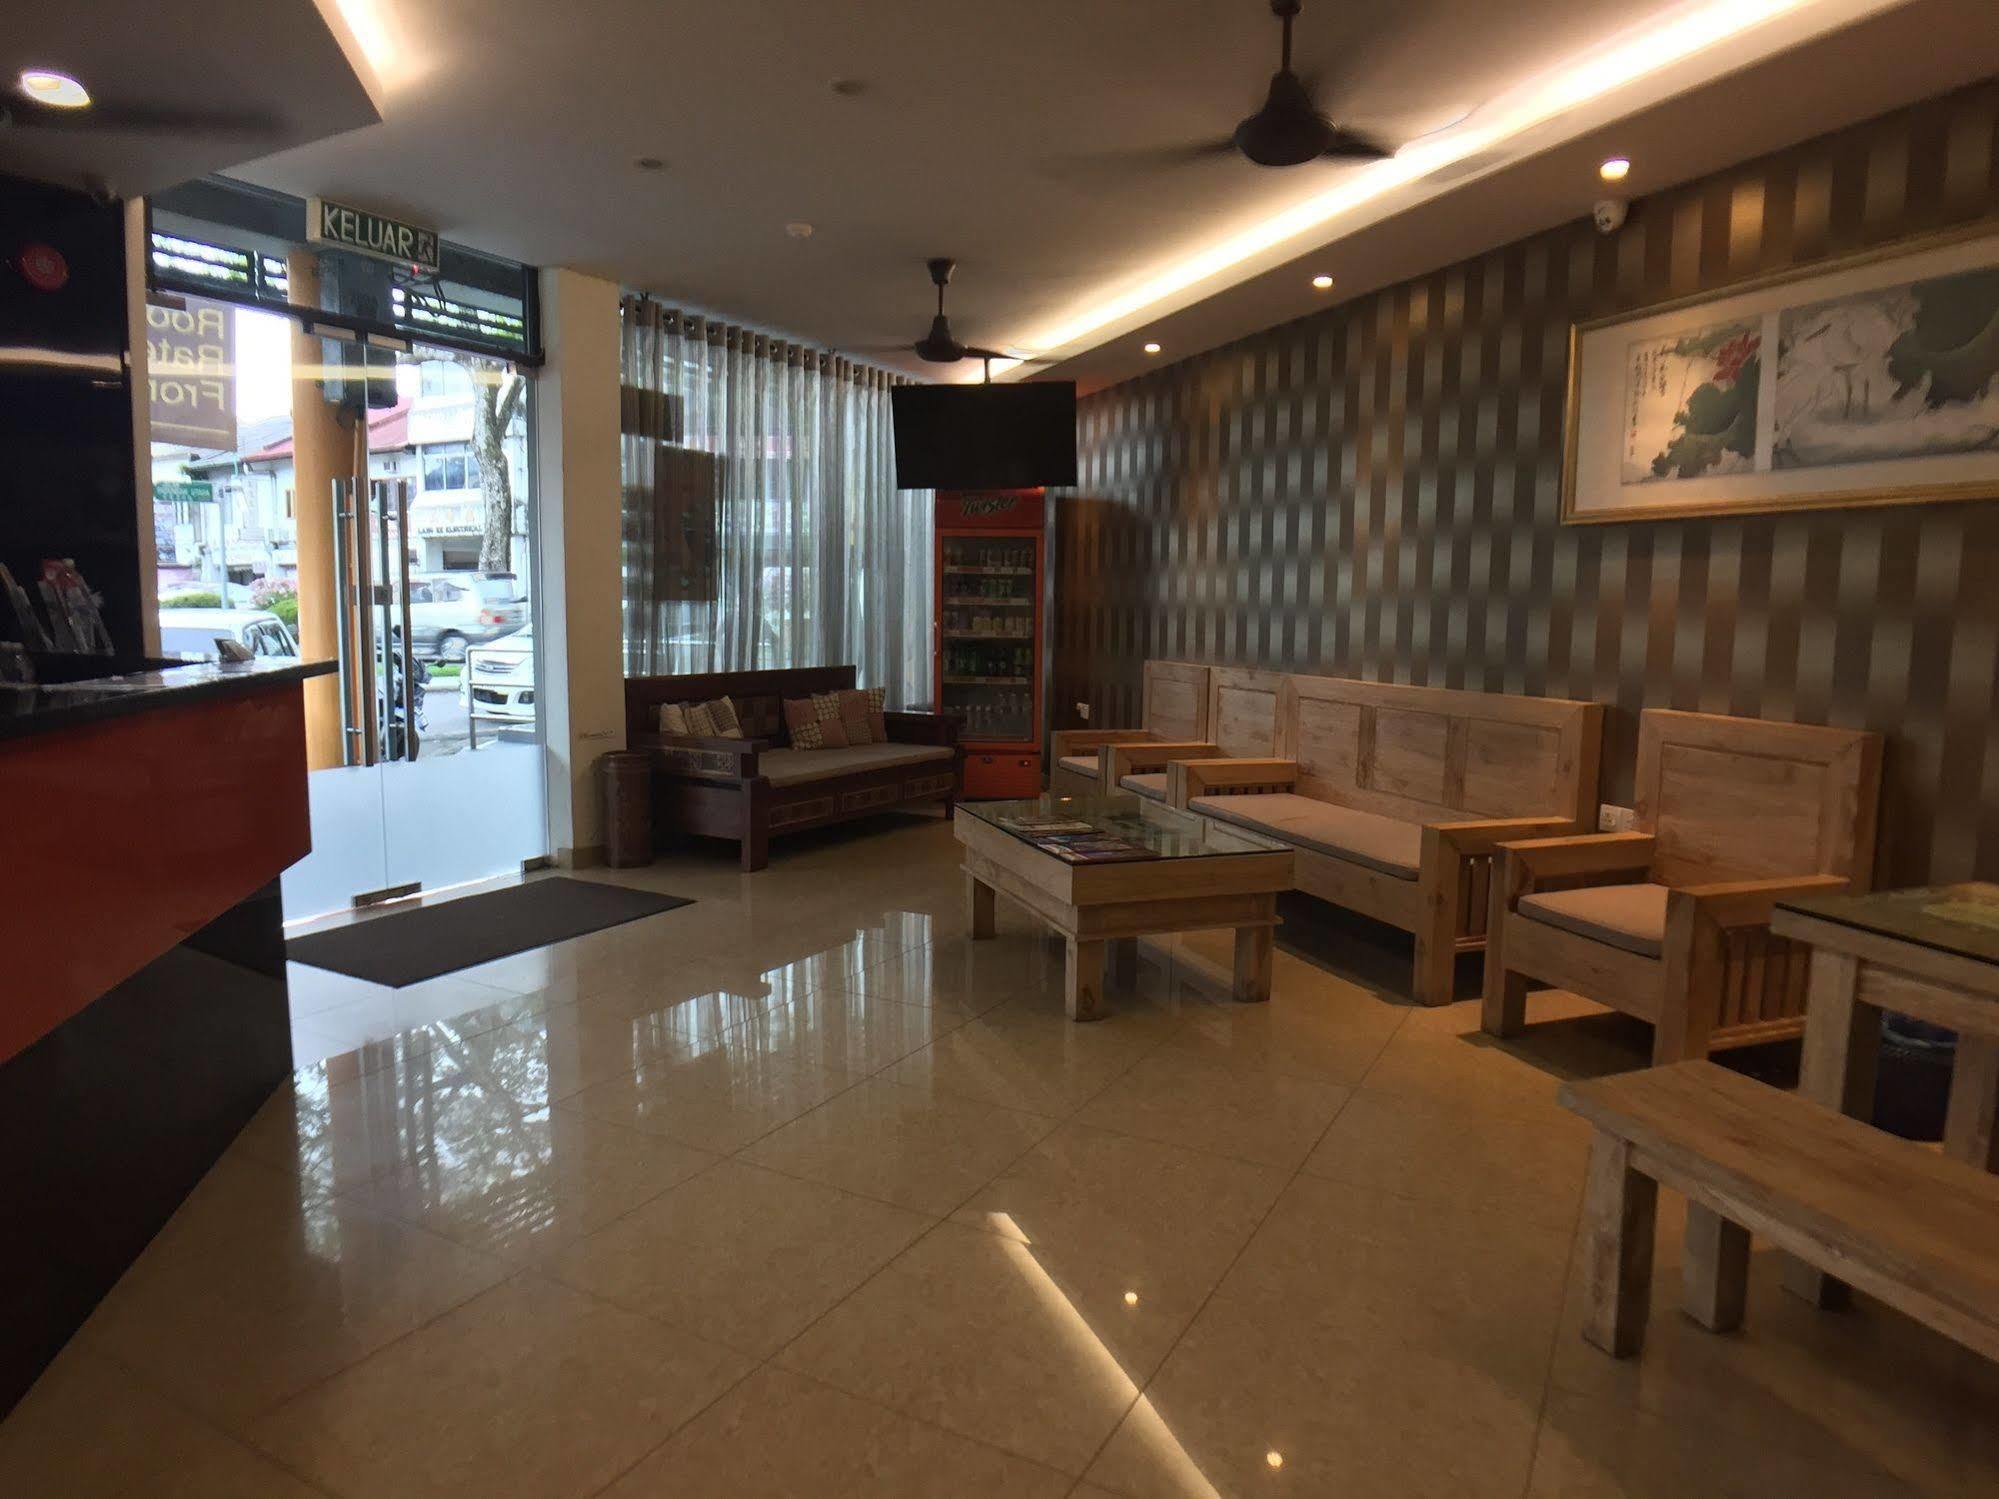 Padungan Hotel Kuching Zewnętrze zdjęcie